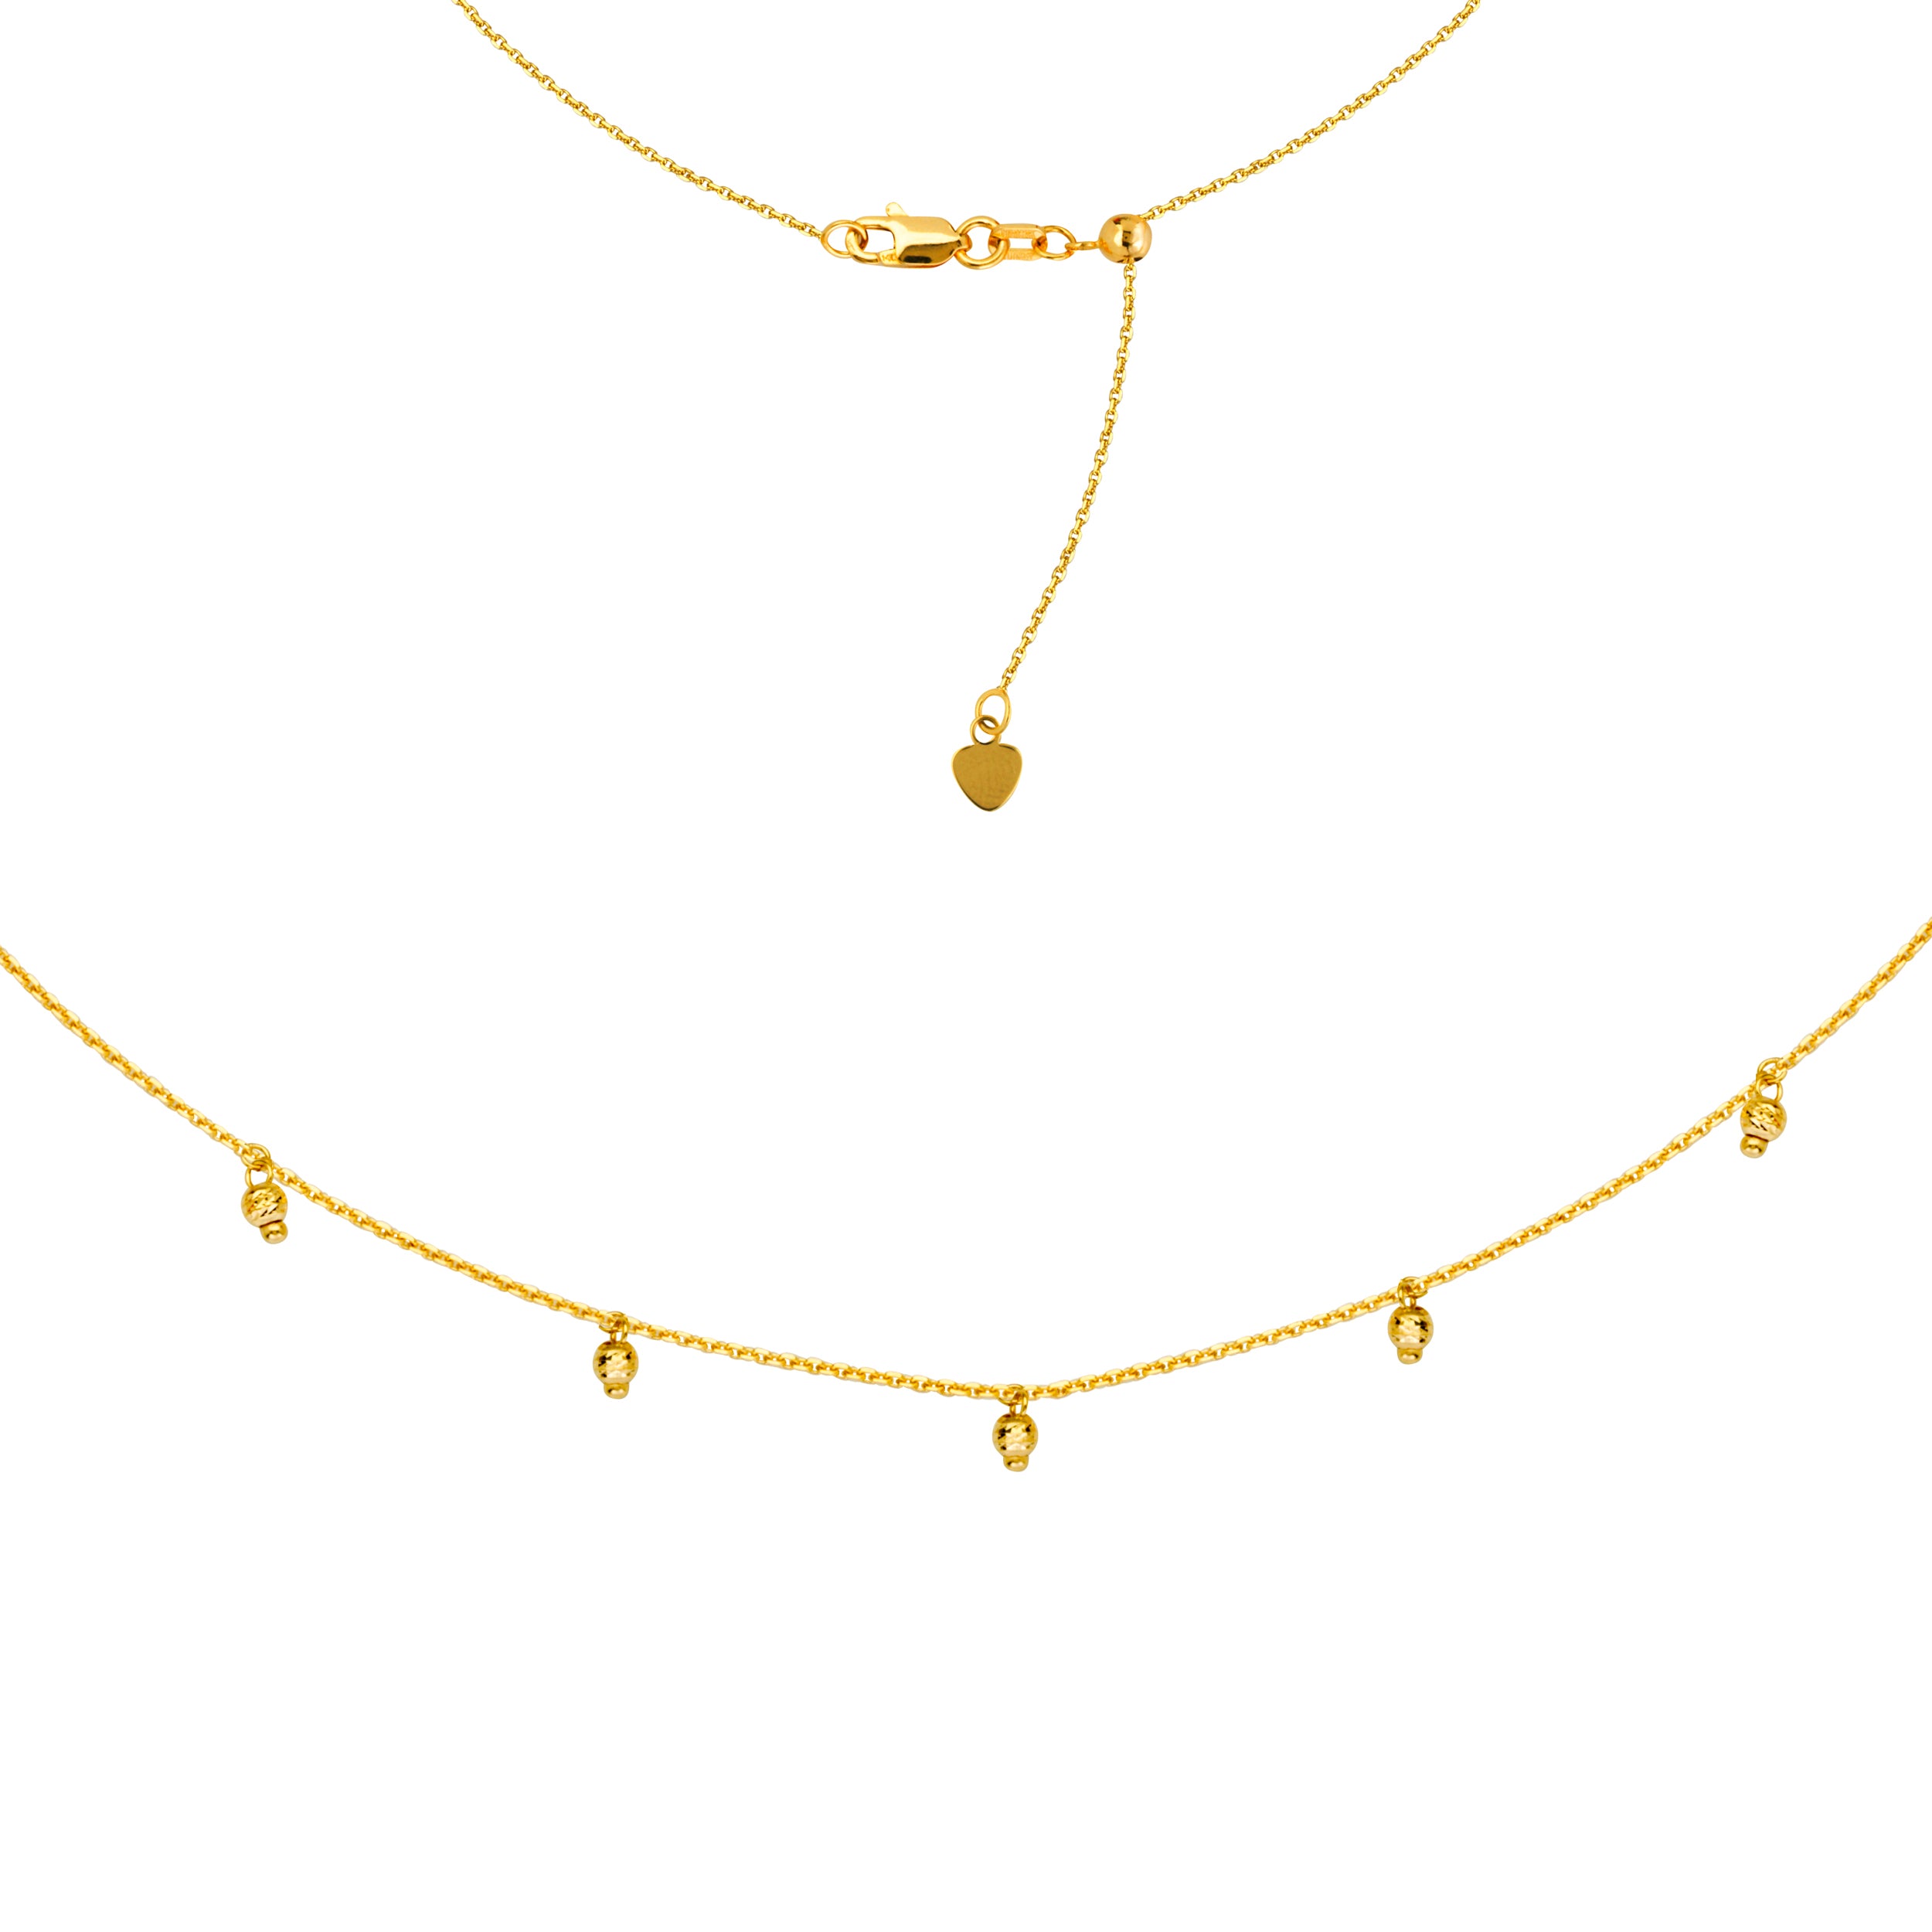 5 Dangle Diamond Cut Beads Choker 14k Yellow Gold Necklace, 16" Adjustable